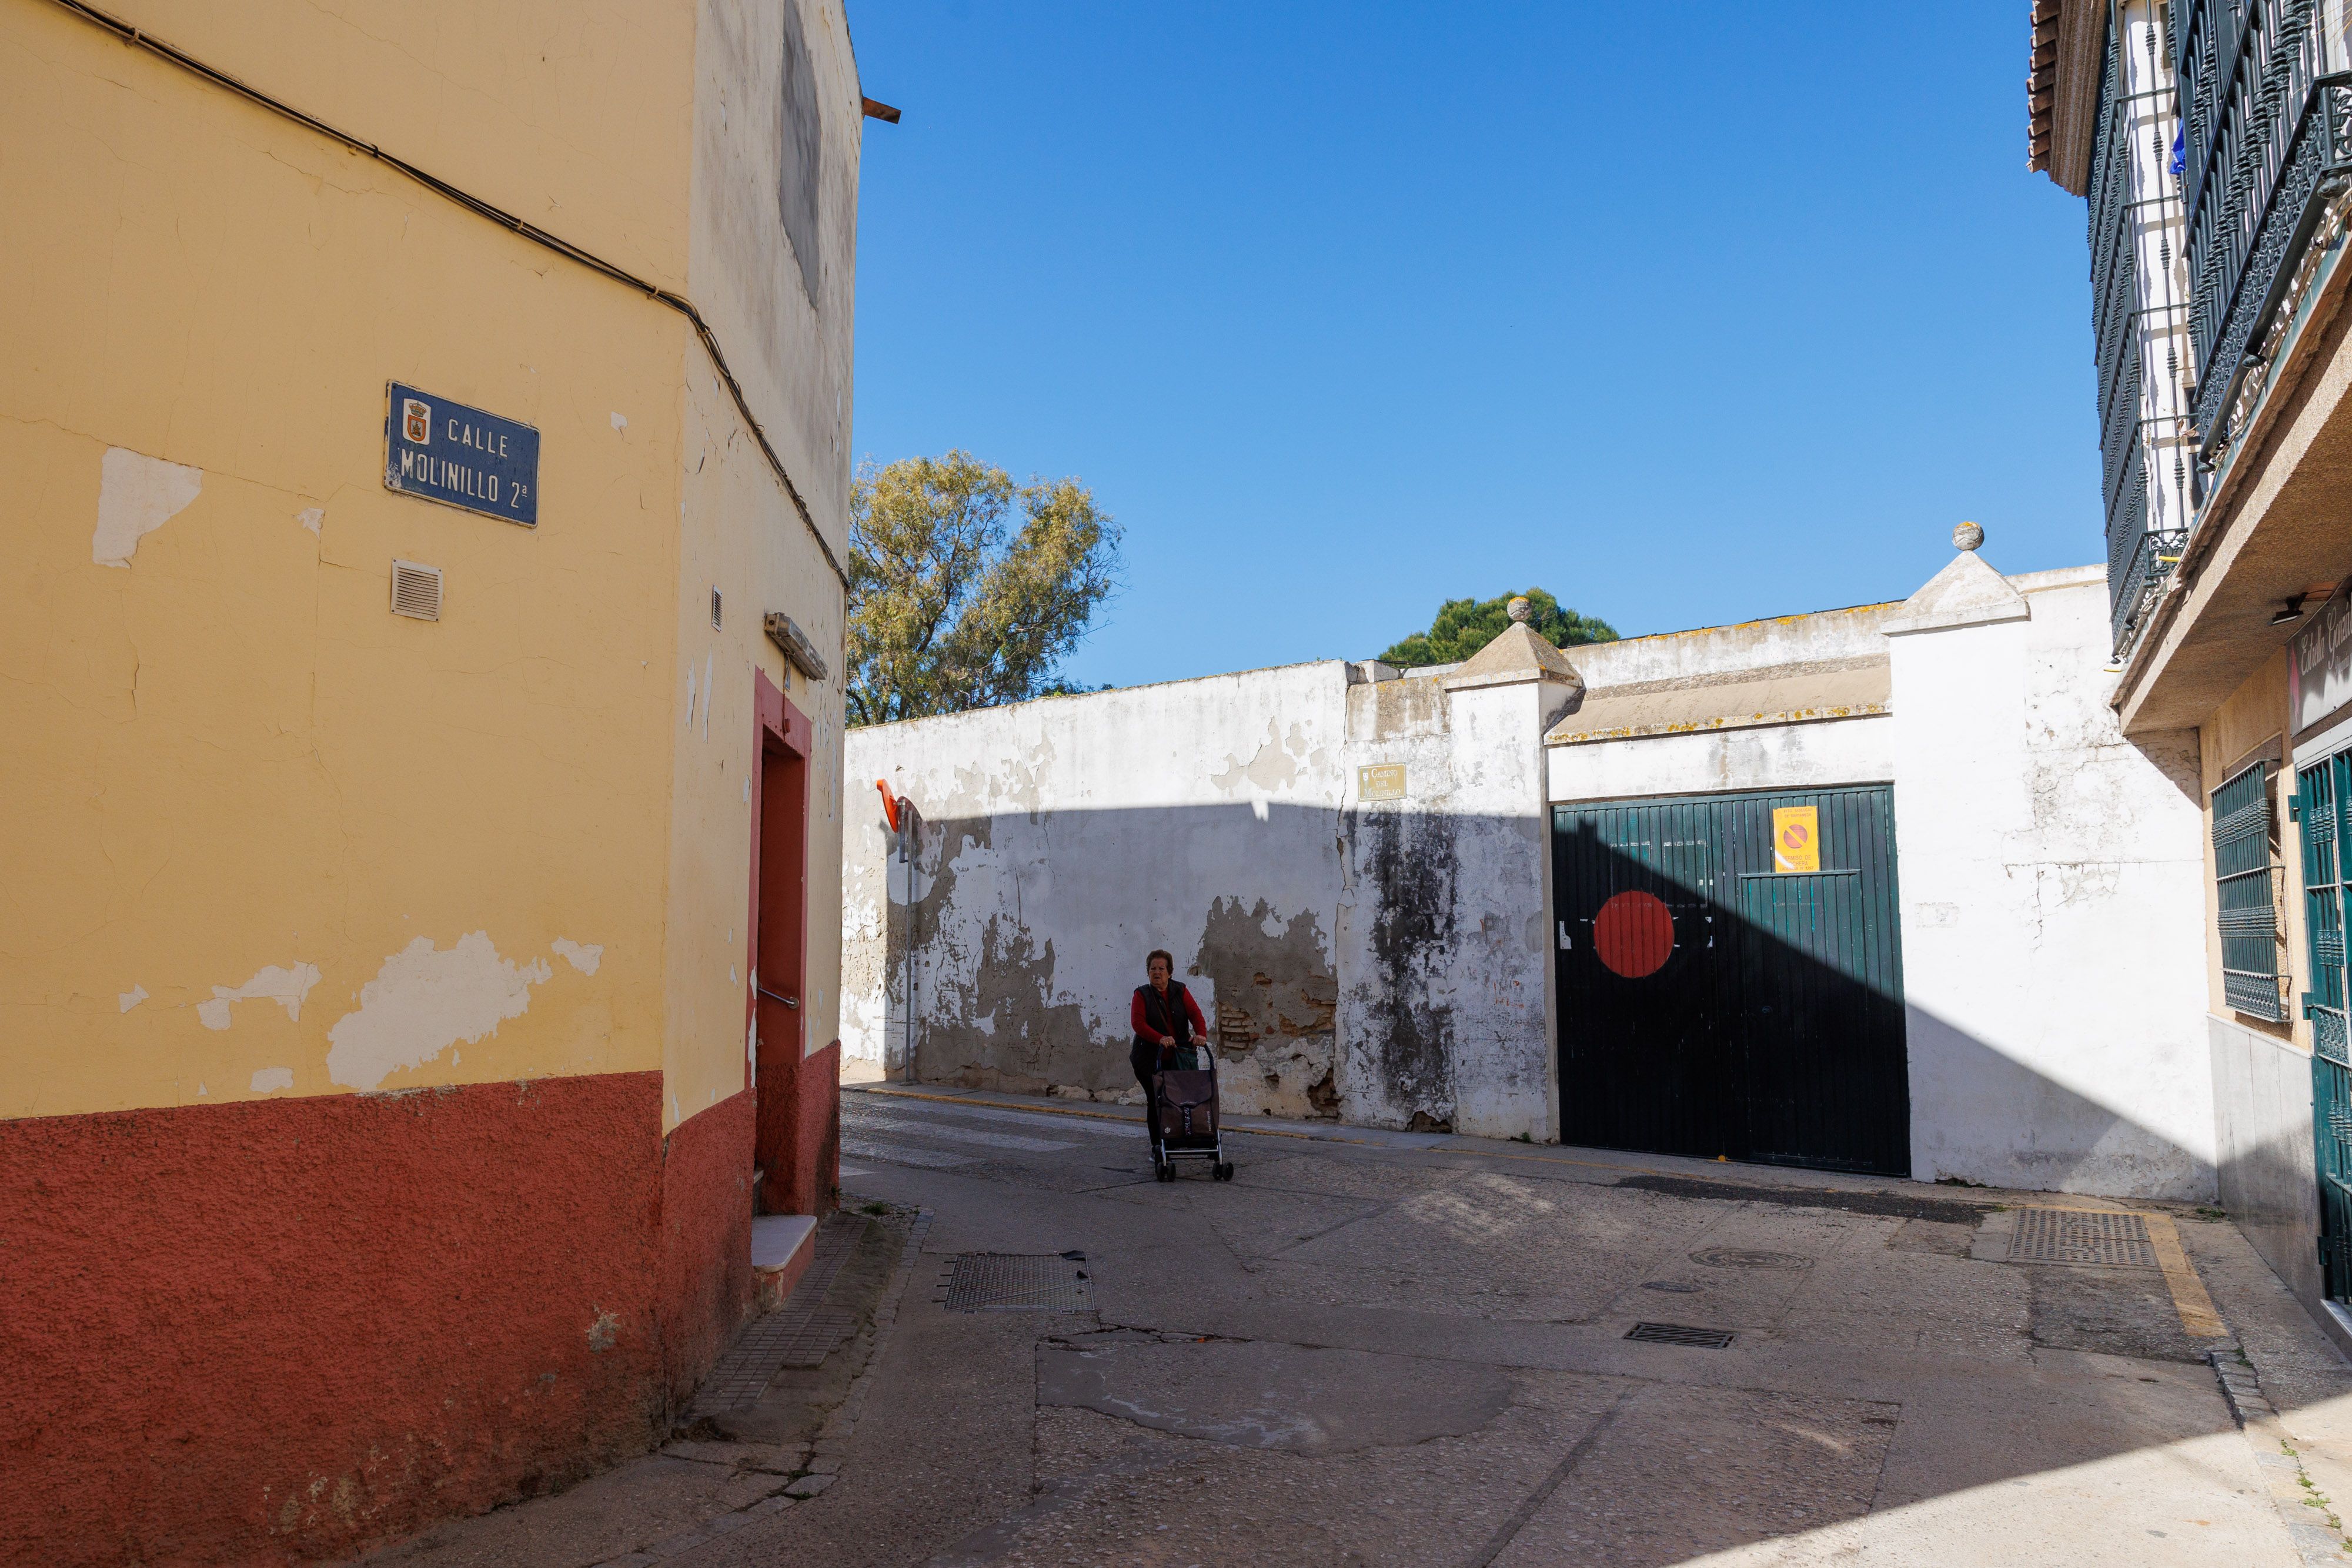 La calle Molinillo, donde se produjo el secuestro en Sanlúcar en febrero.